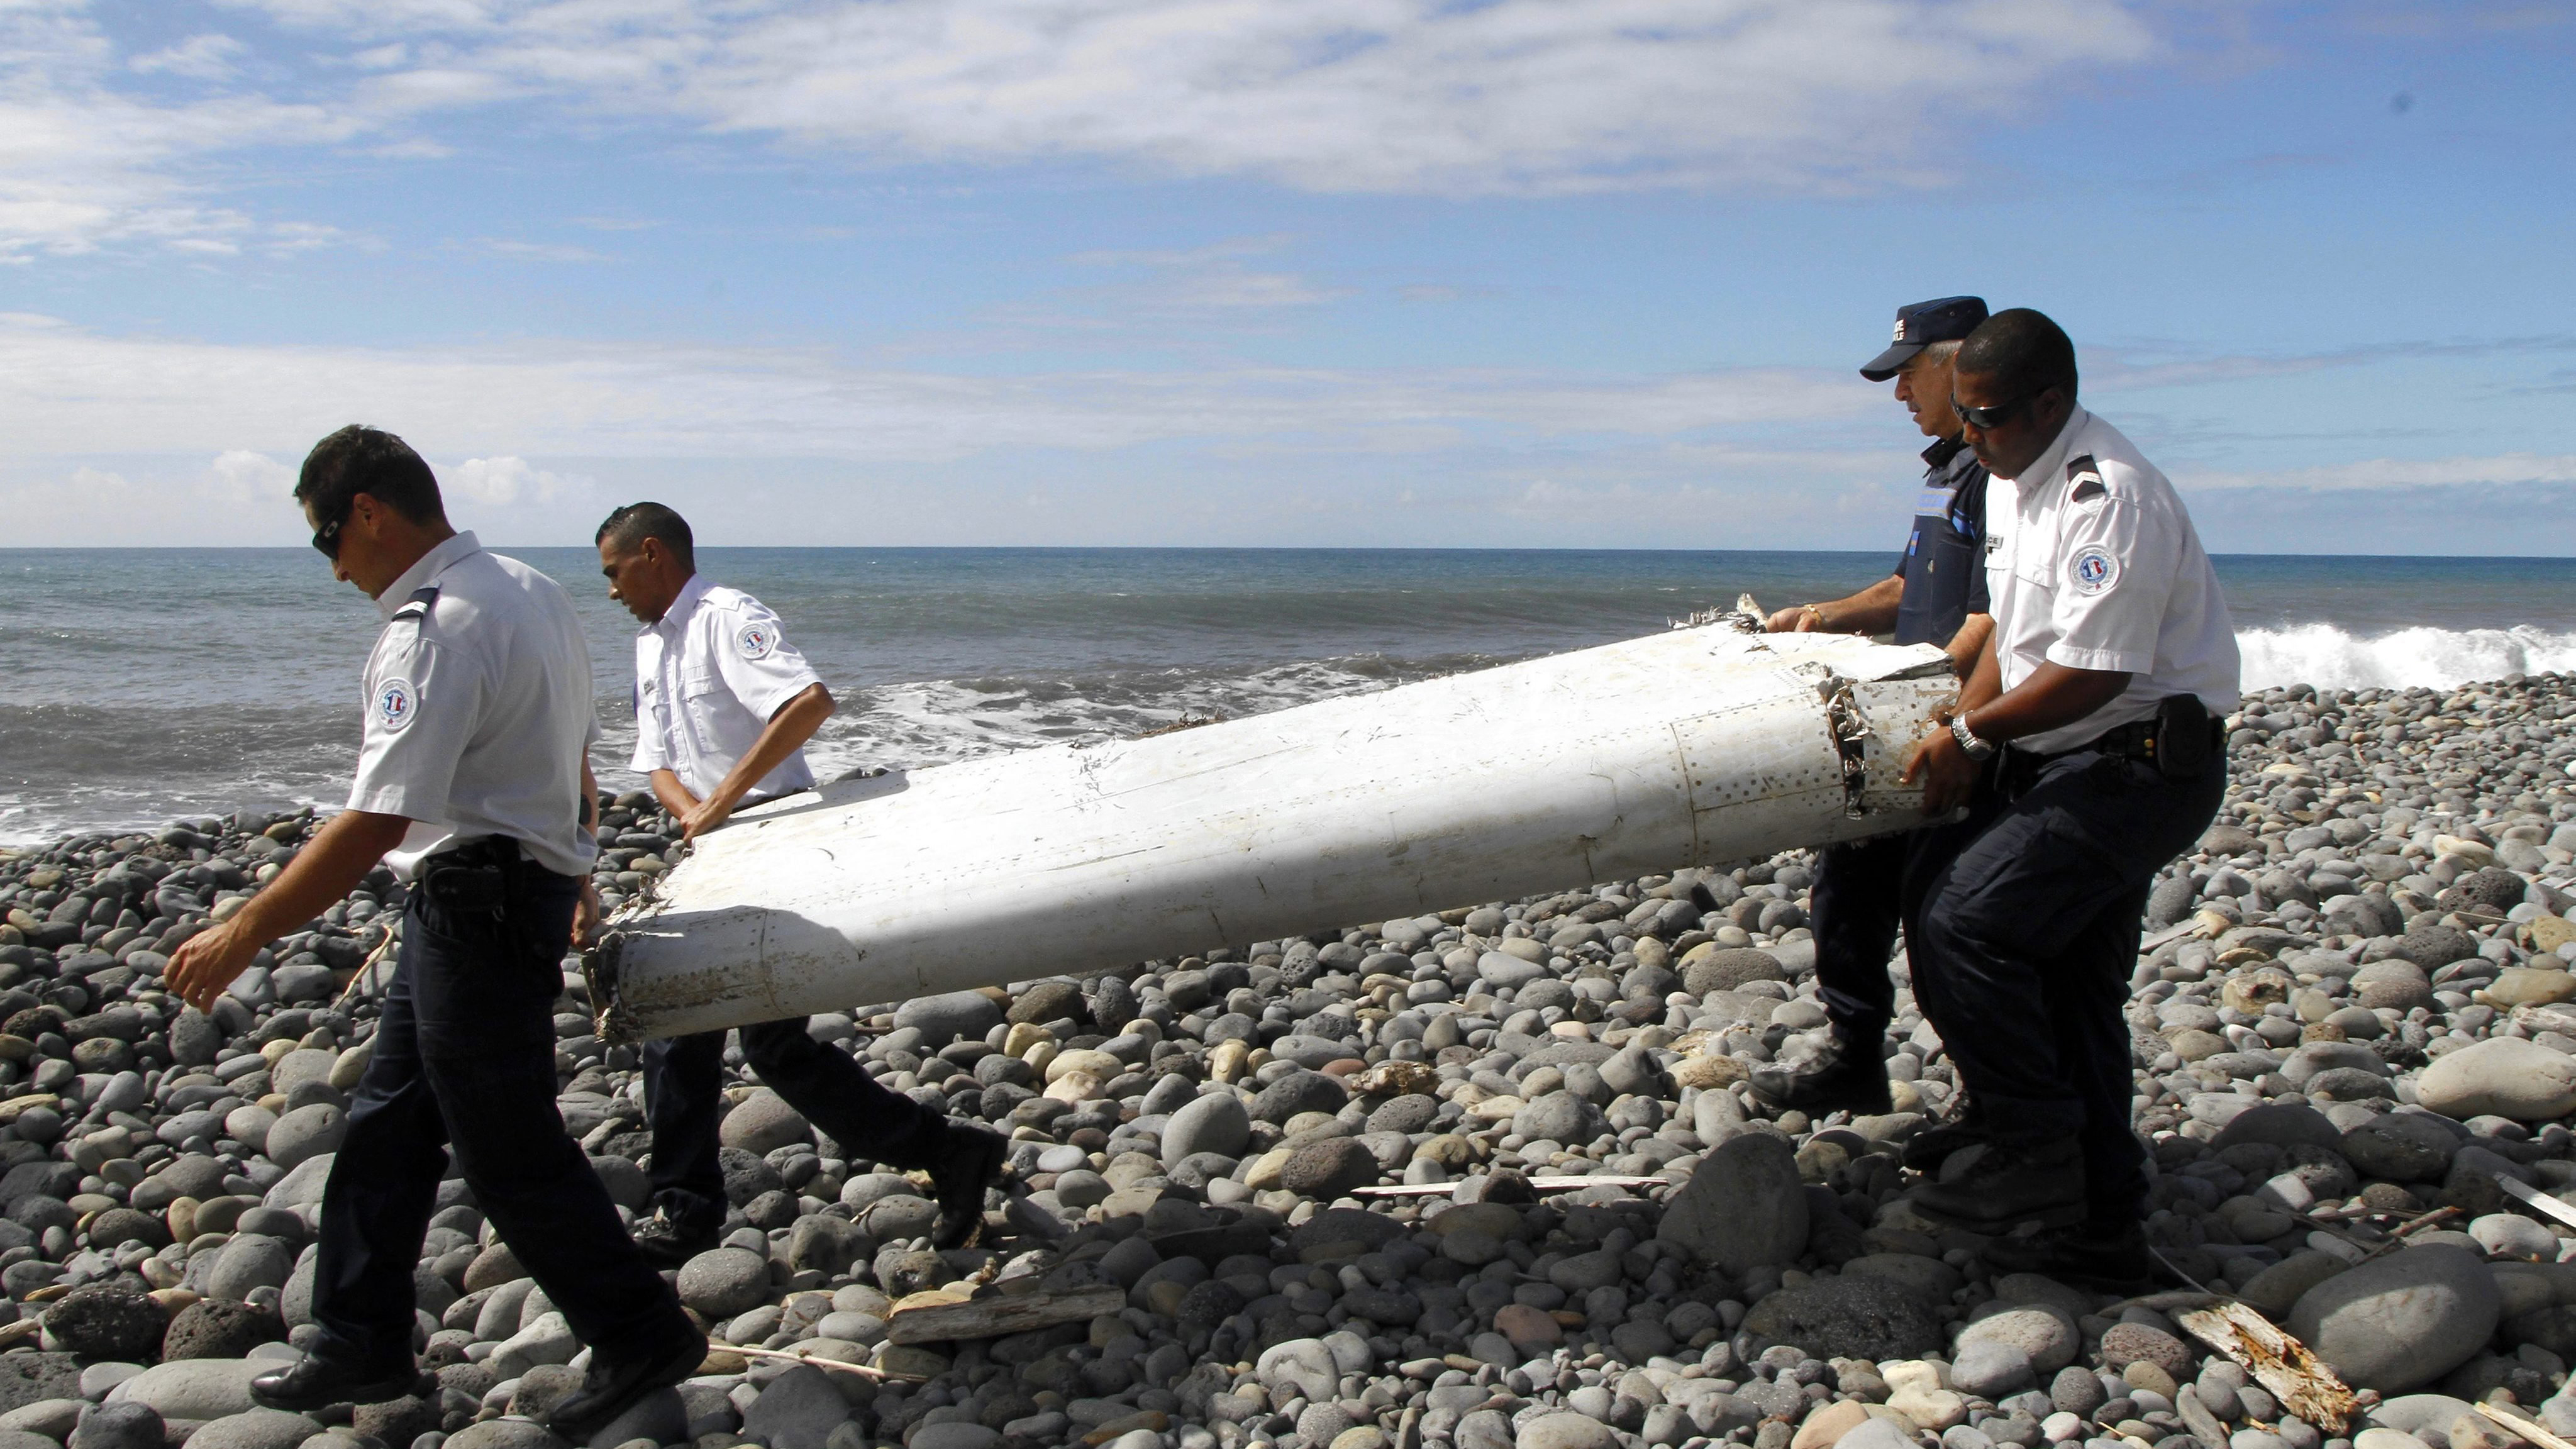 Tin tức thời sự 24h ngày 11/3 đề cập đến chiến dịch tìm kiếm máy bay MH370 mất tích bí ẩn